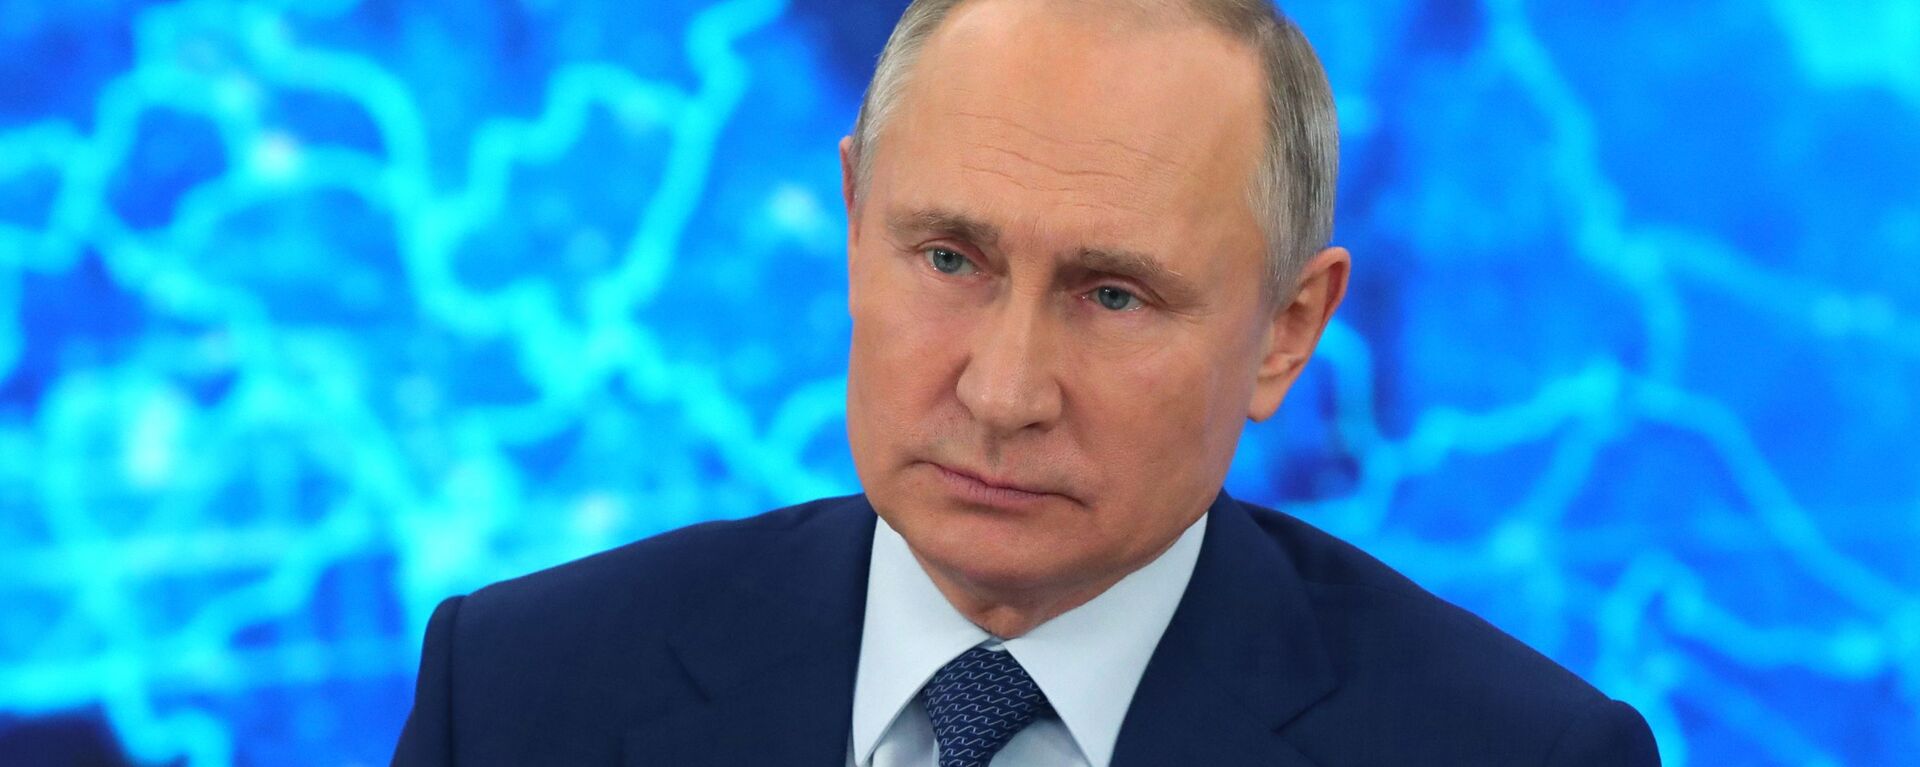 Президент РФ Владимир Путин на большой ежегодной пресс-конференции, 17 декабря 2020 - Sputnik Latvija, 1920, 15.02.2021